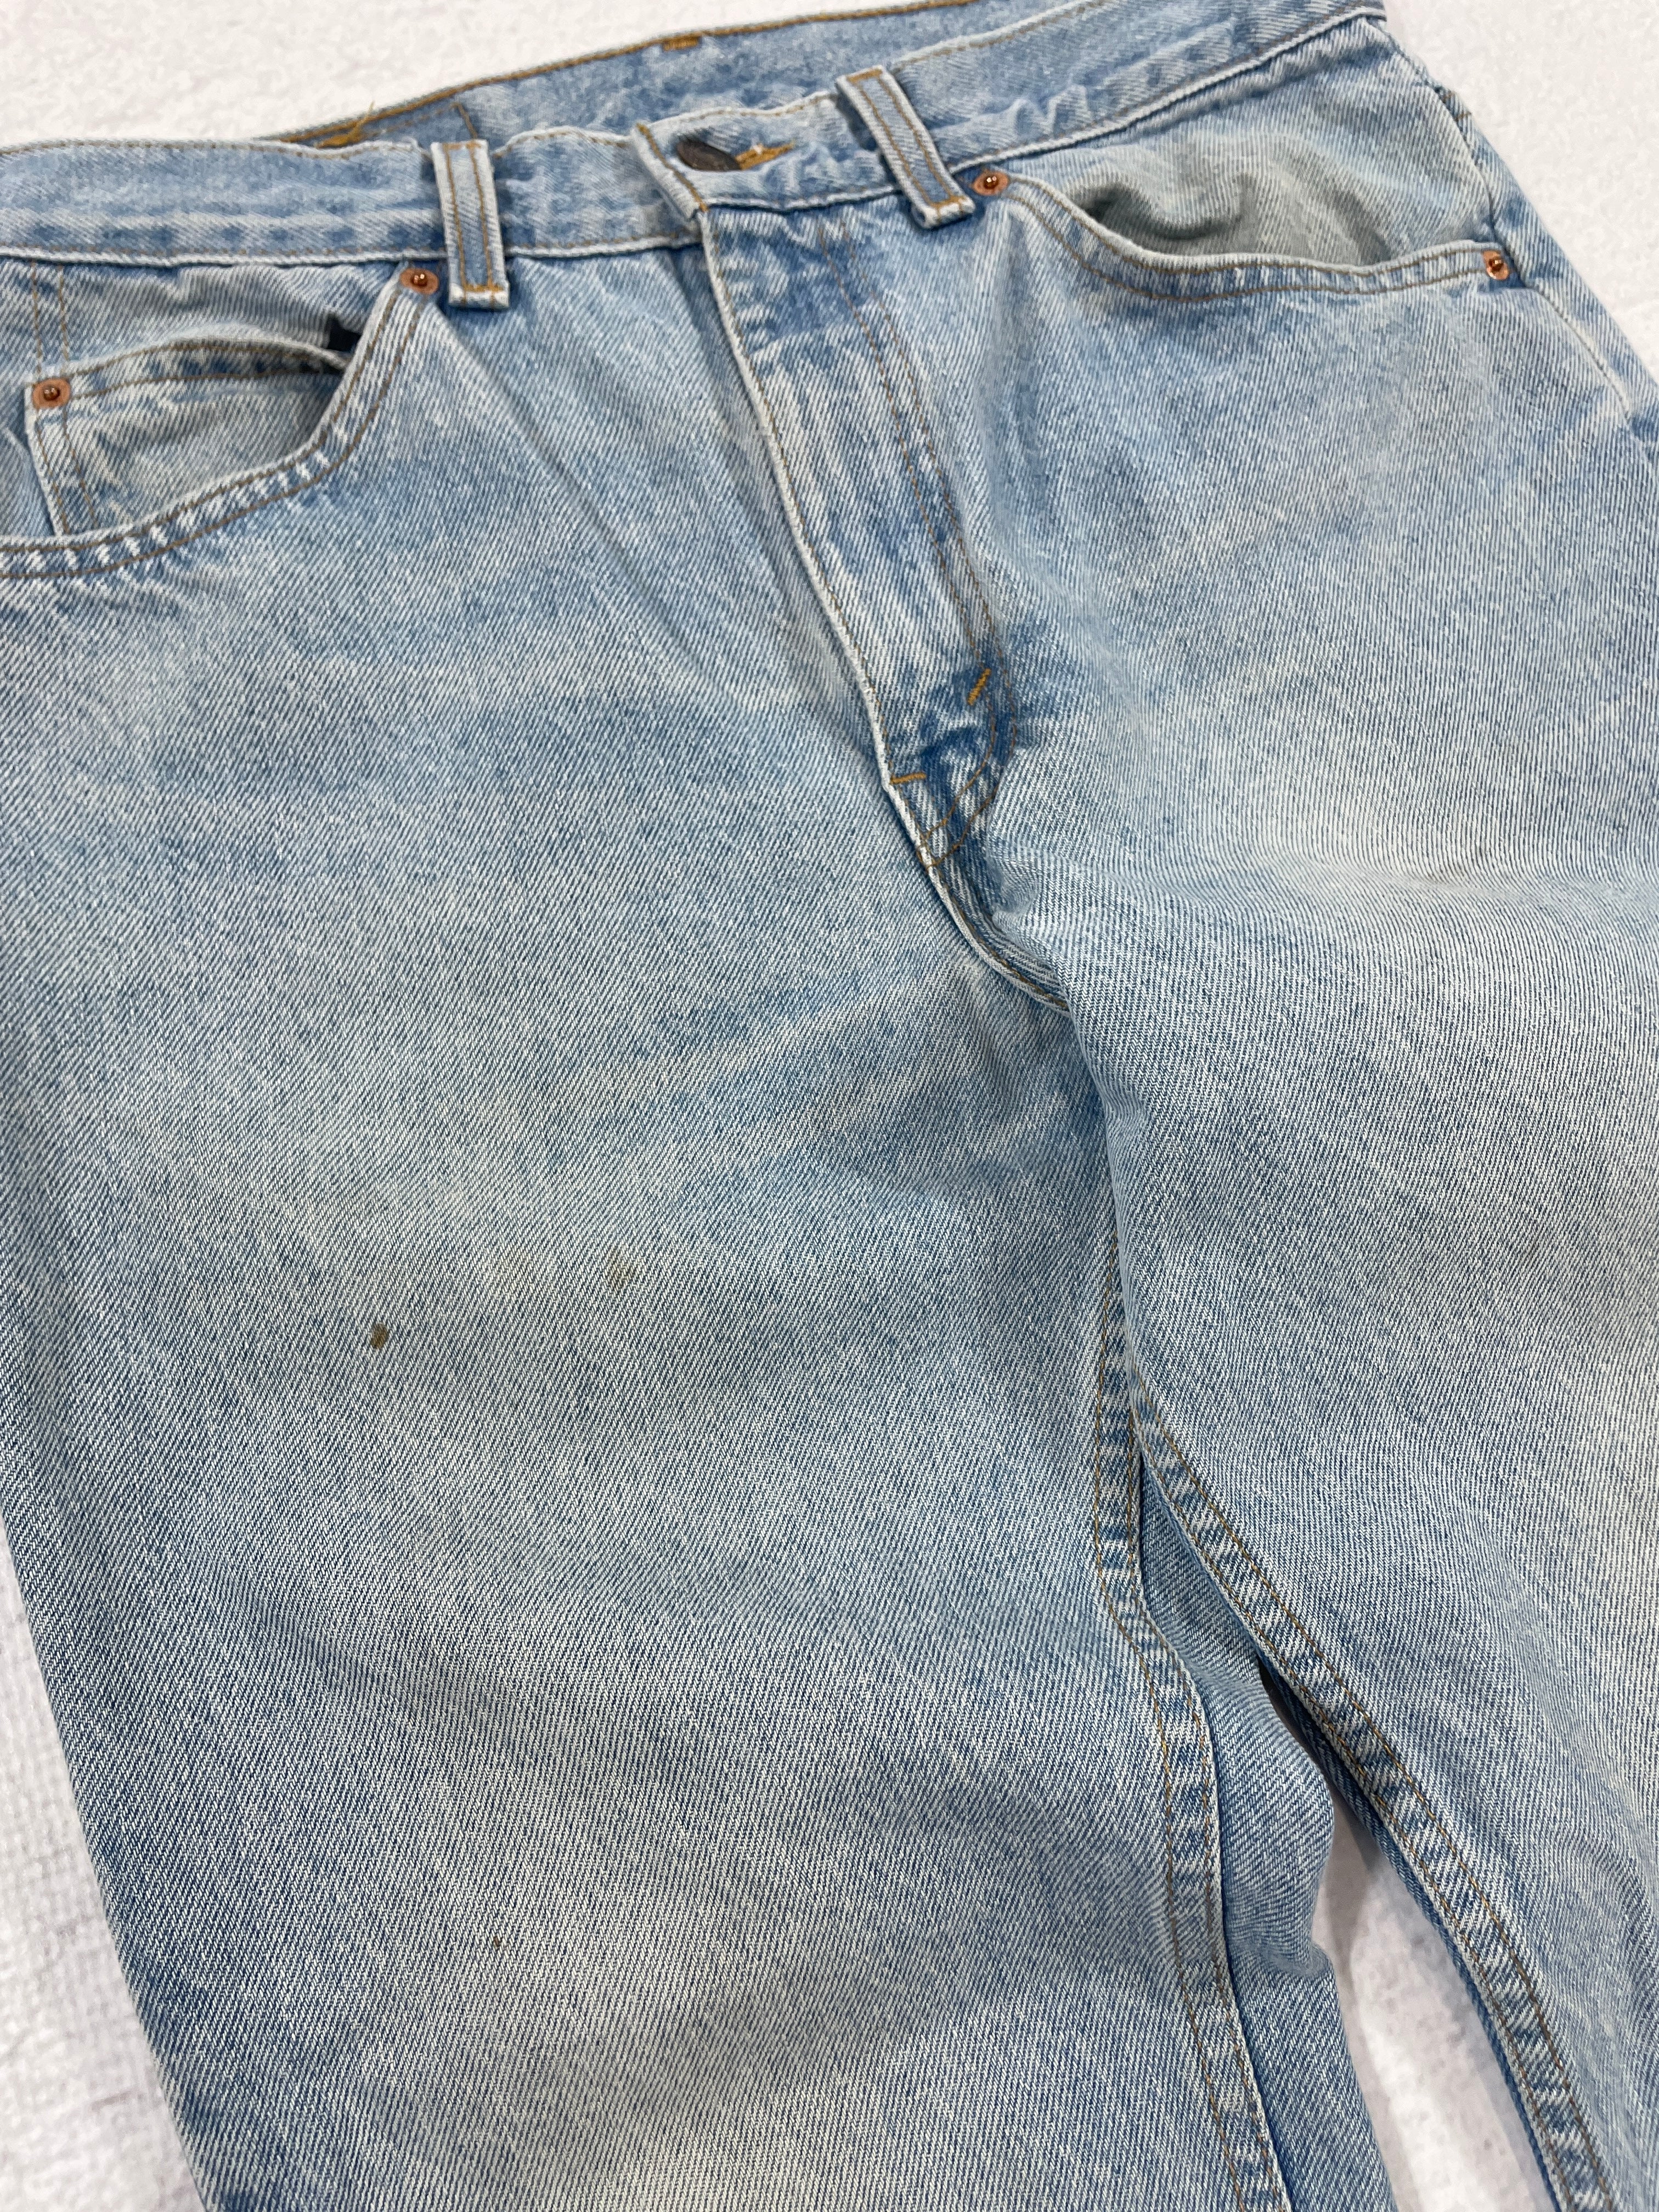 Vintage Levis Jeans - Women's 32Wx30L